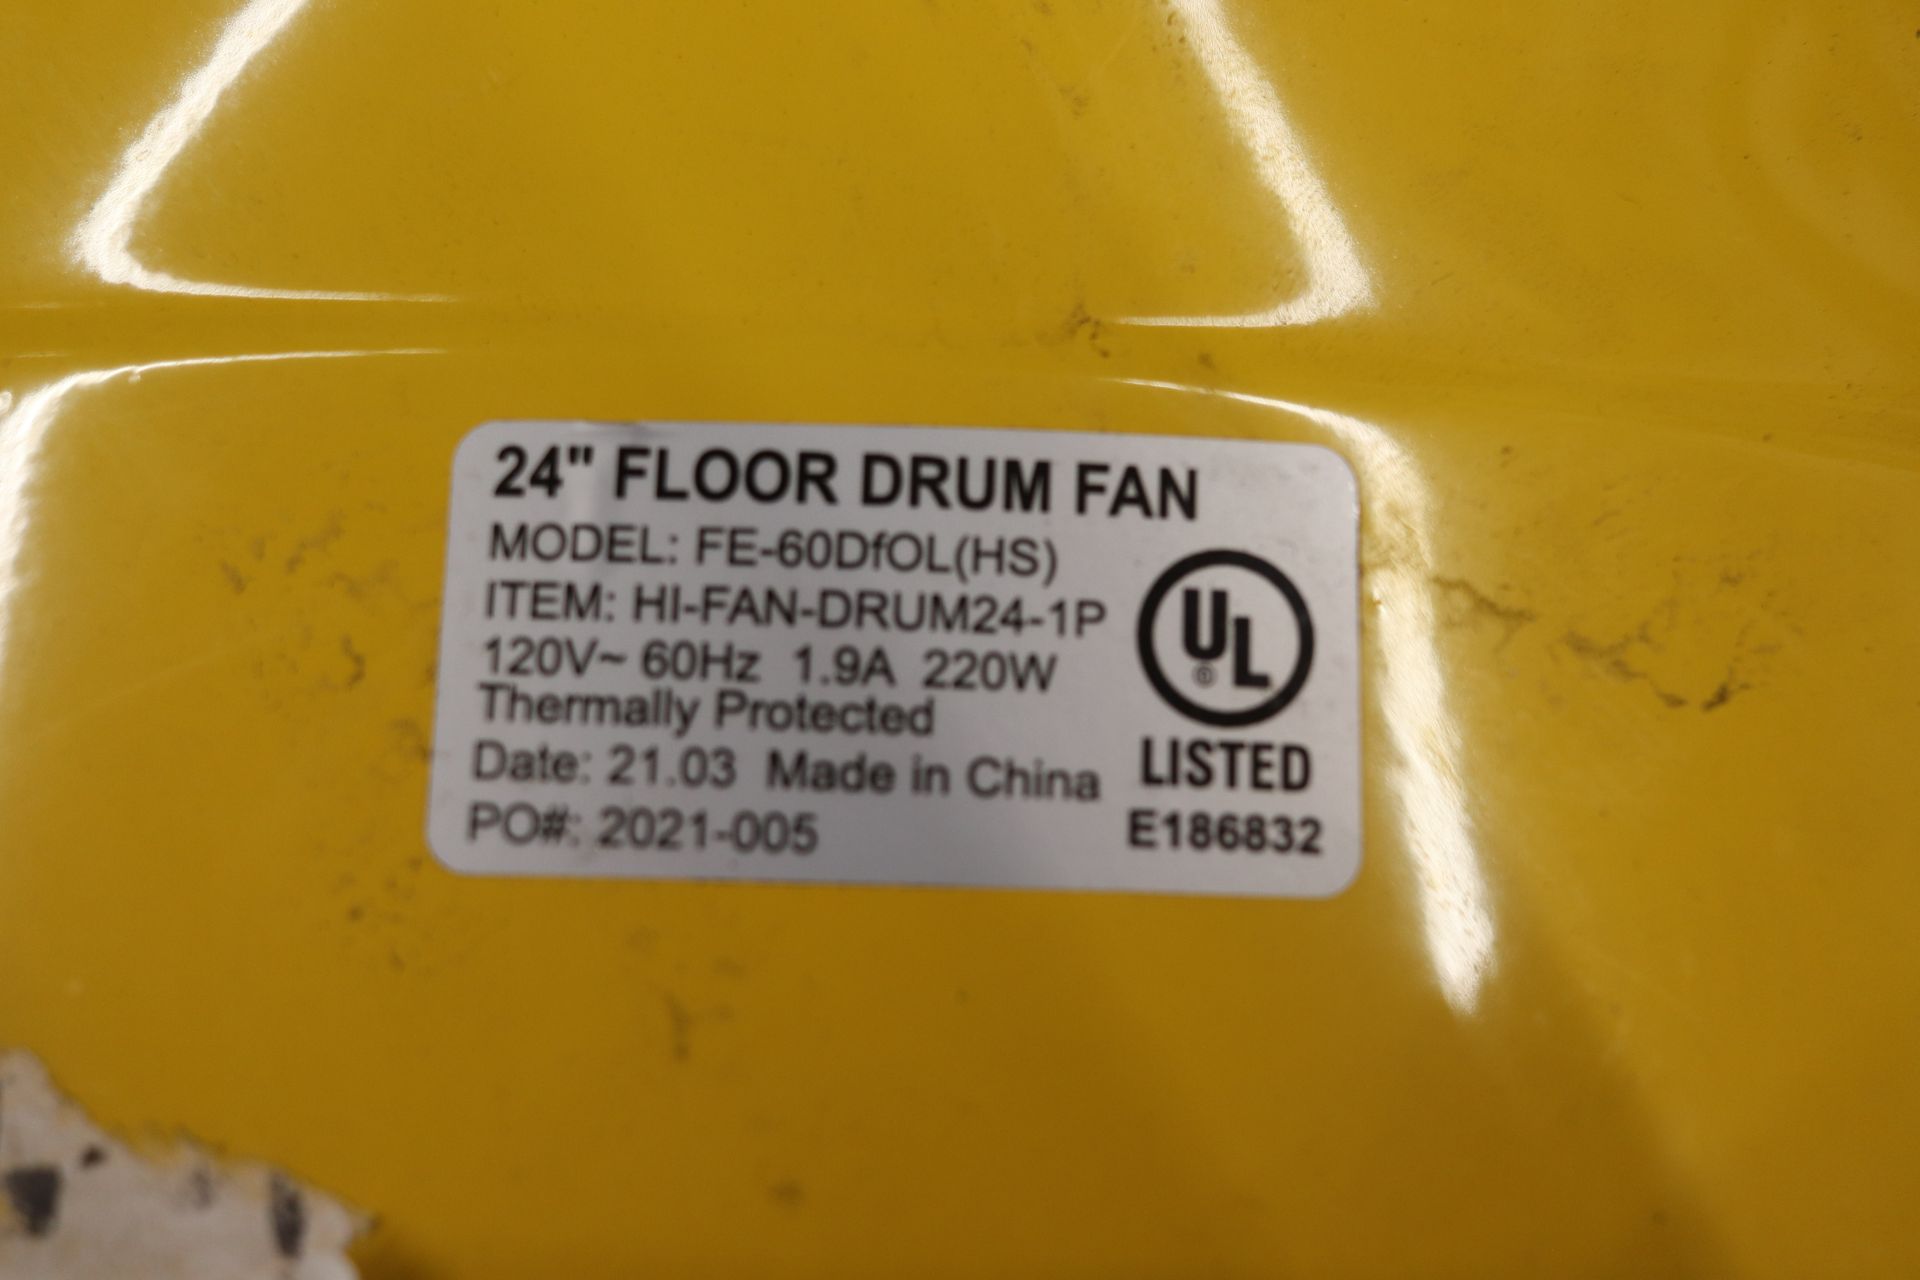 Tornado 24" floor drum fan, model FE60D FOL - Image 2 of 2